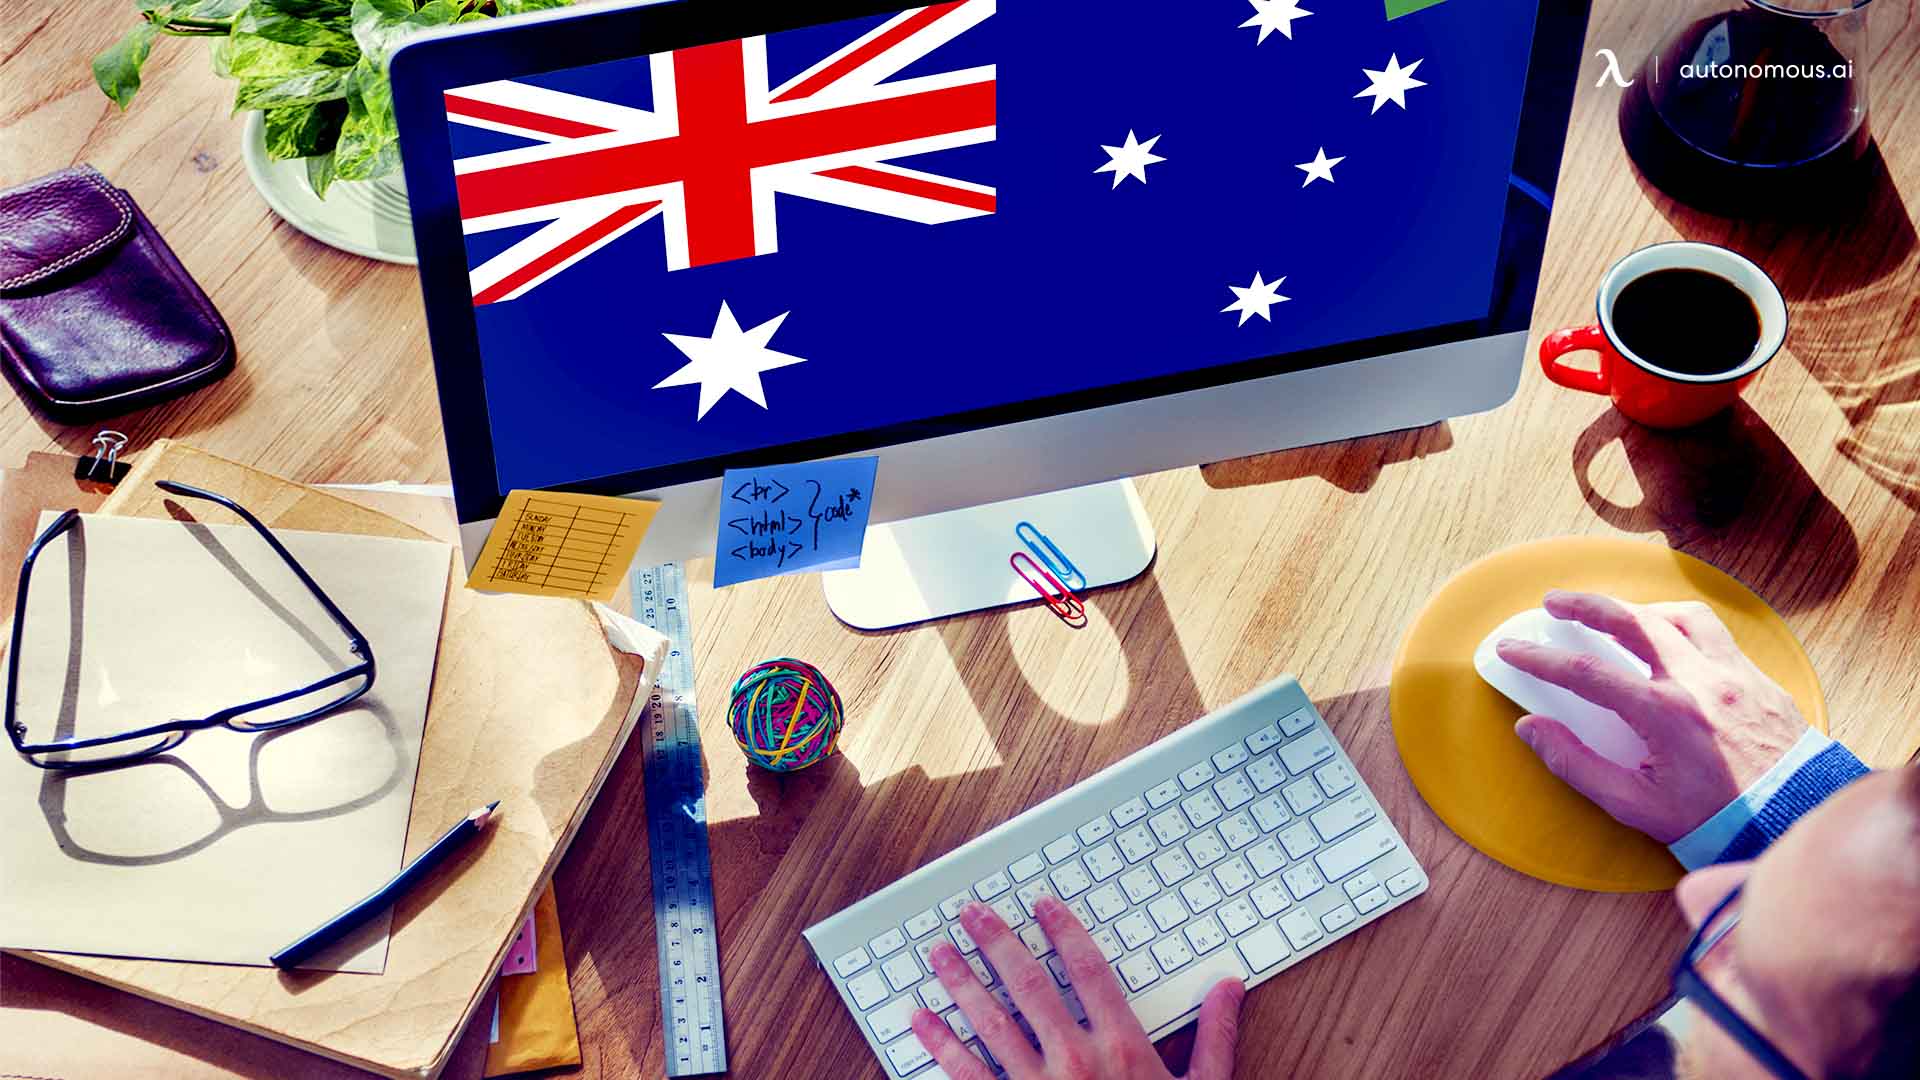 10 Best Standing Desk Frames in Australia for 2022